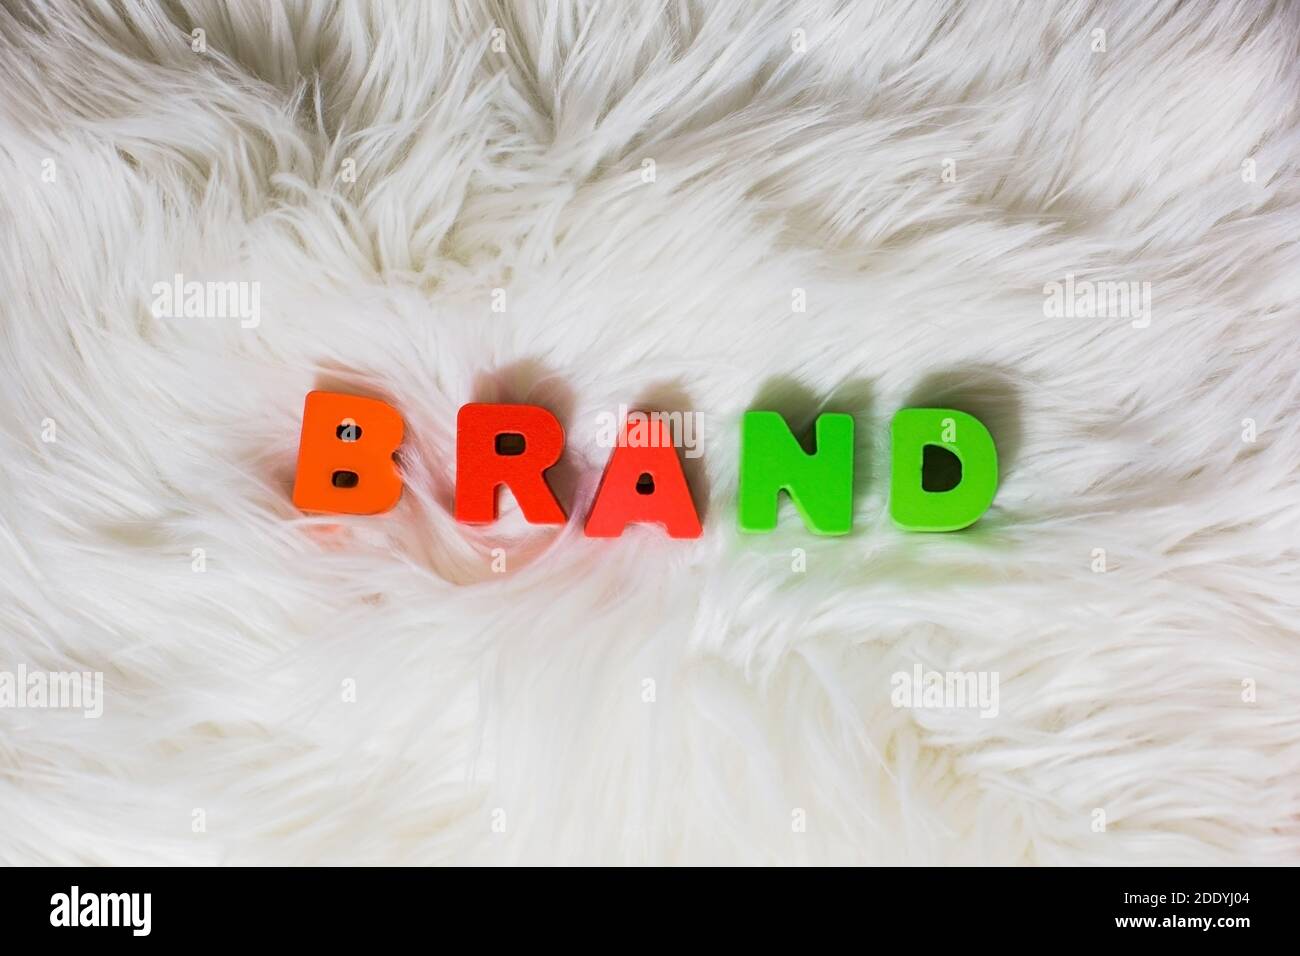 Ortografia del marchio di parola da lettere abc colorate in legno fluffly, faux fur bianco sfondo, moda, industrie dei social media, concetto di stile Foto Stock